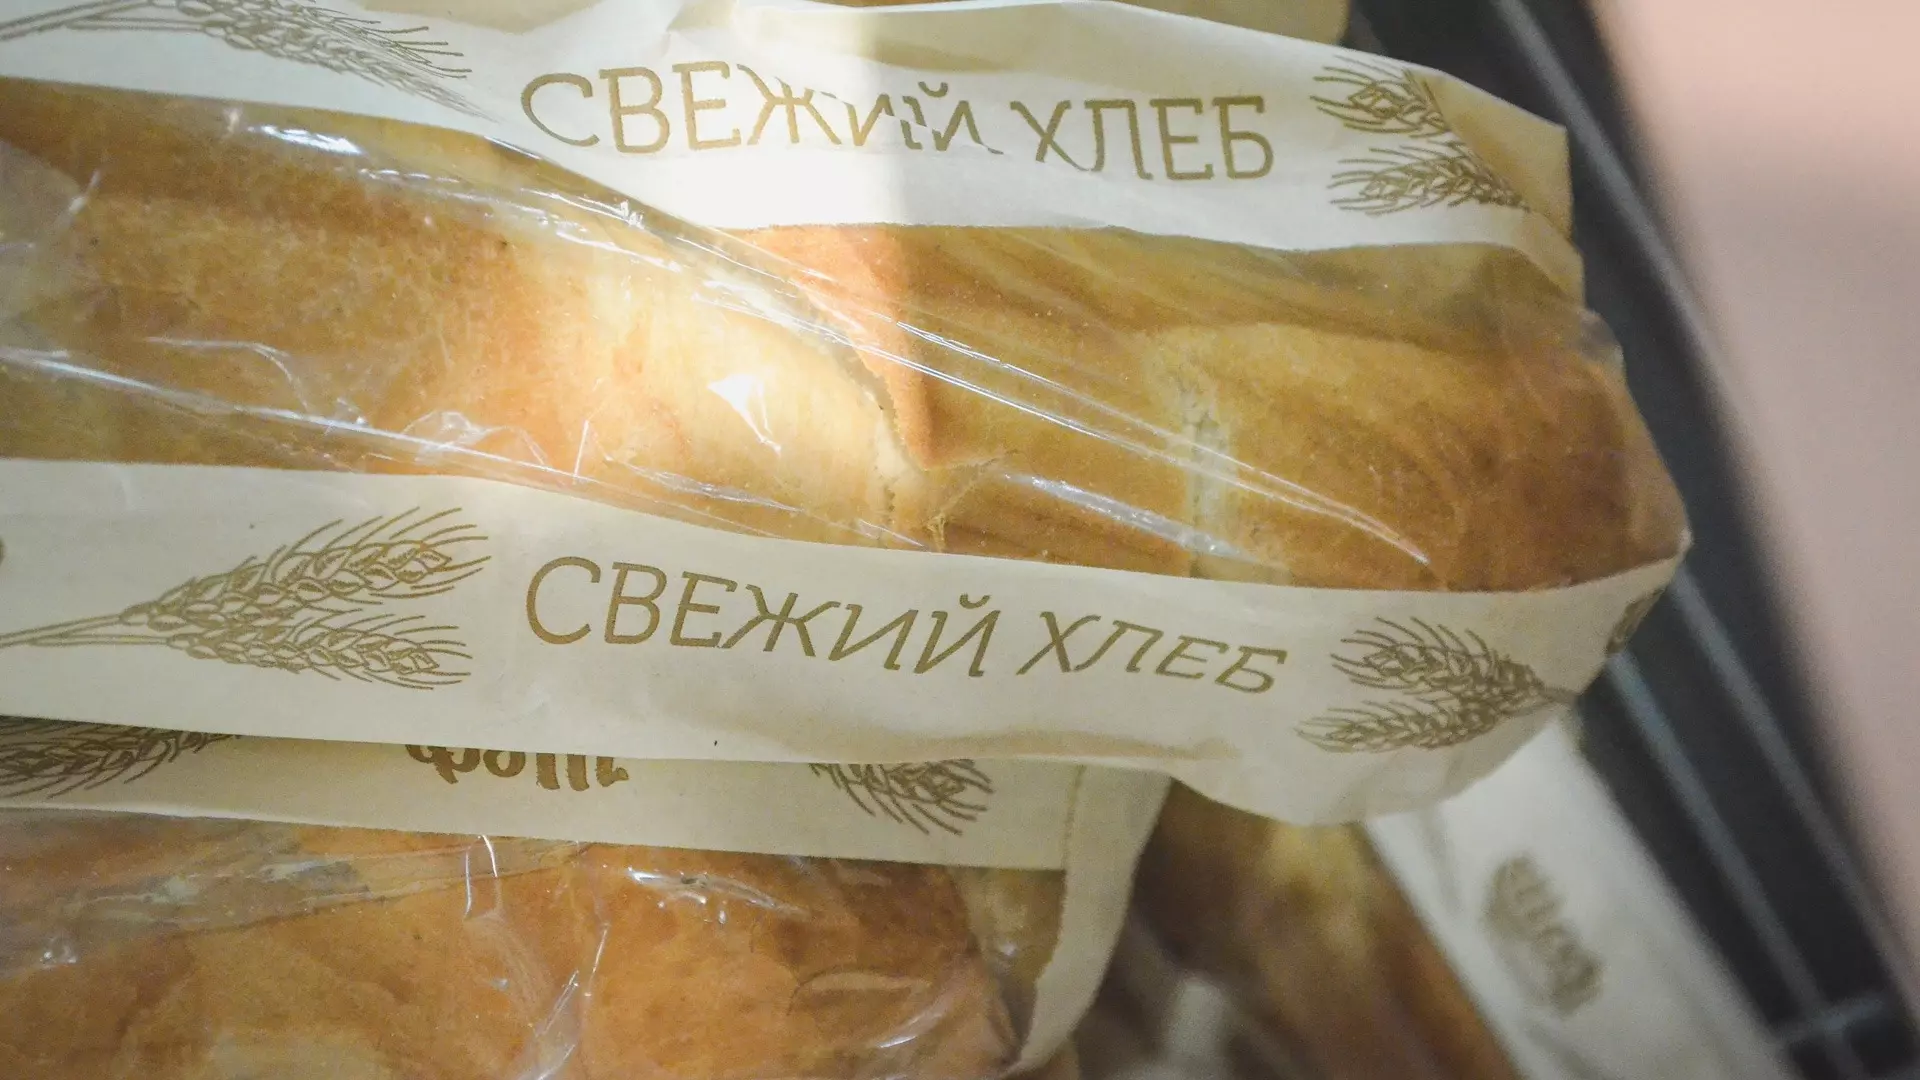 Причины рост цен на хлеб в Челябинске на 10% придется объяснить